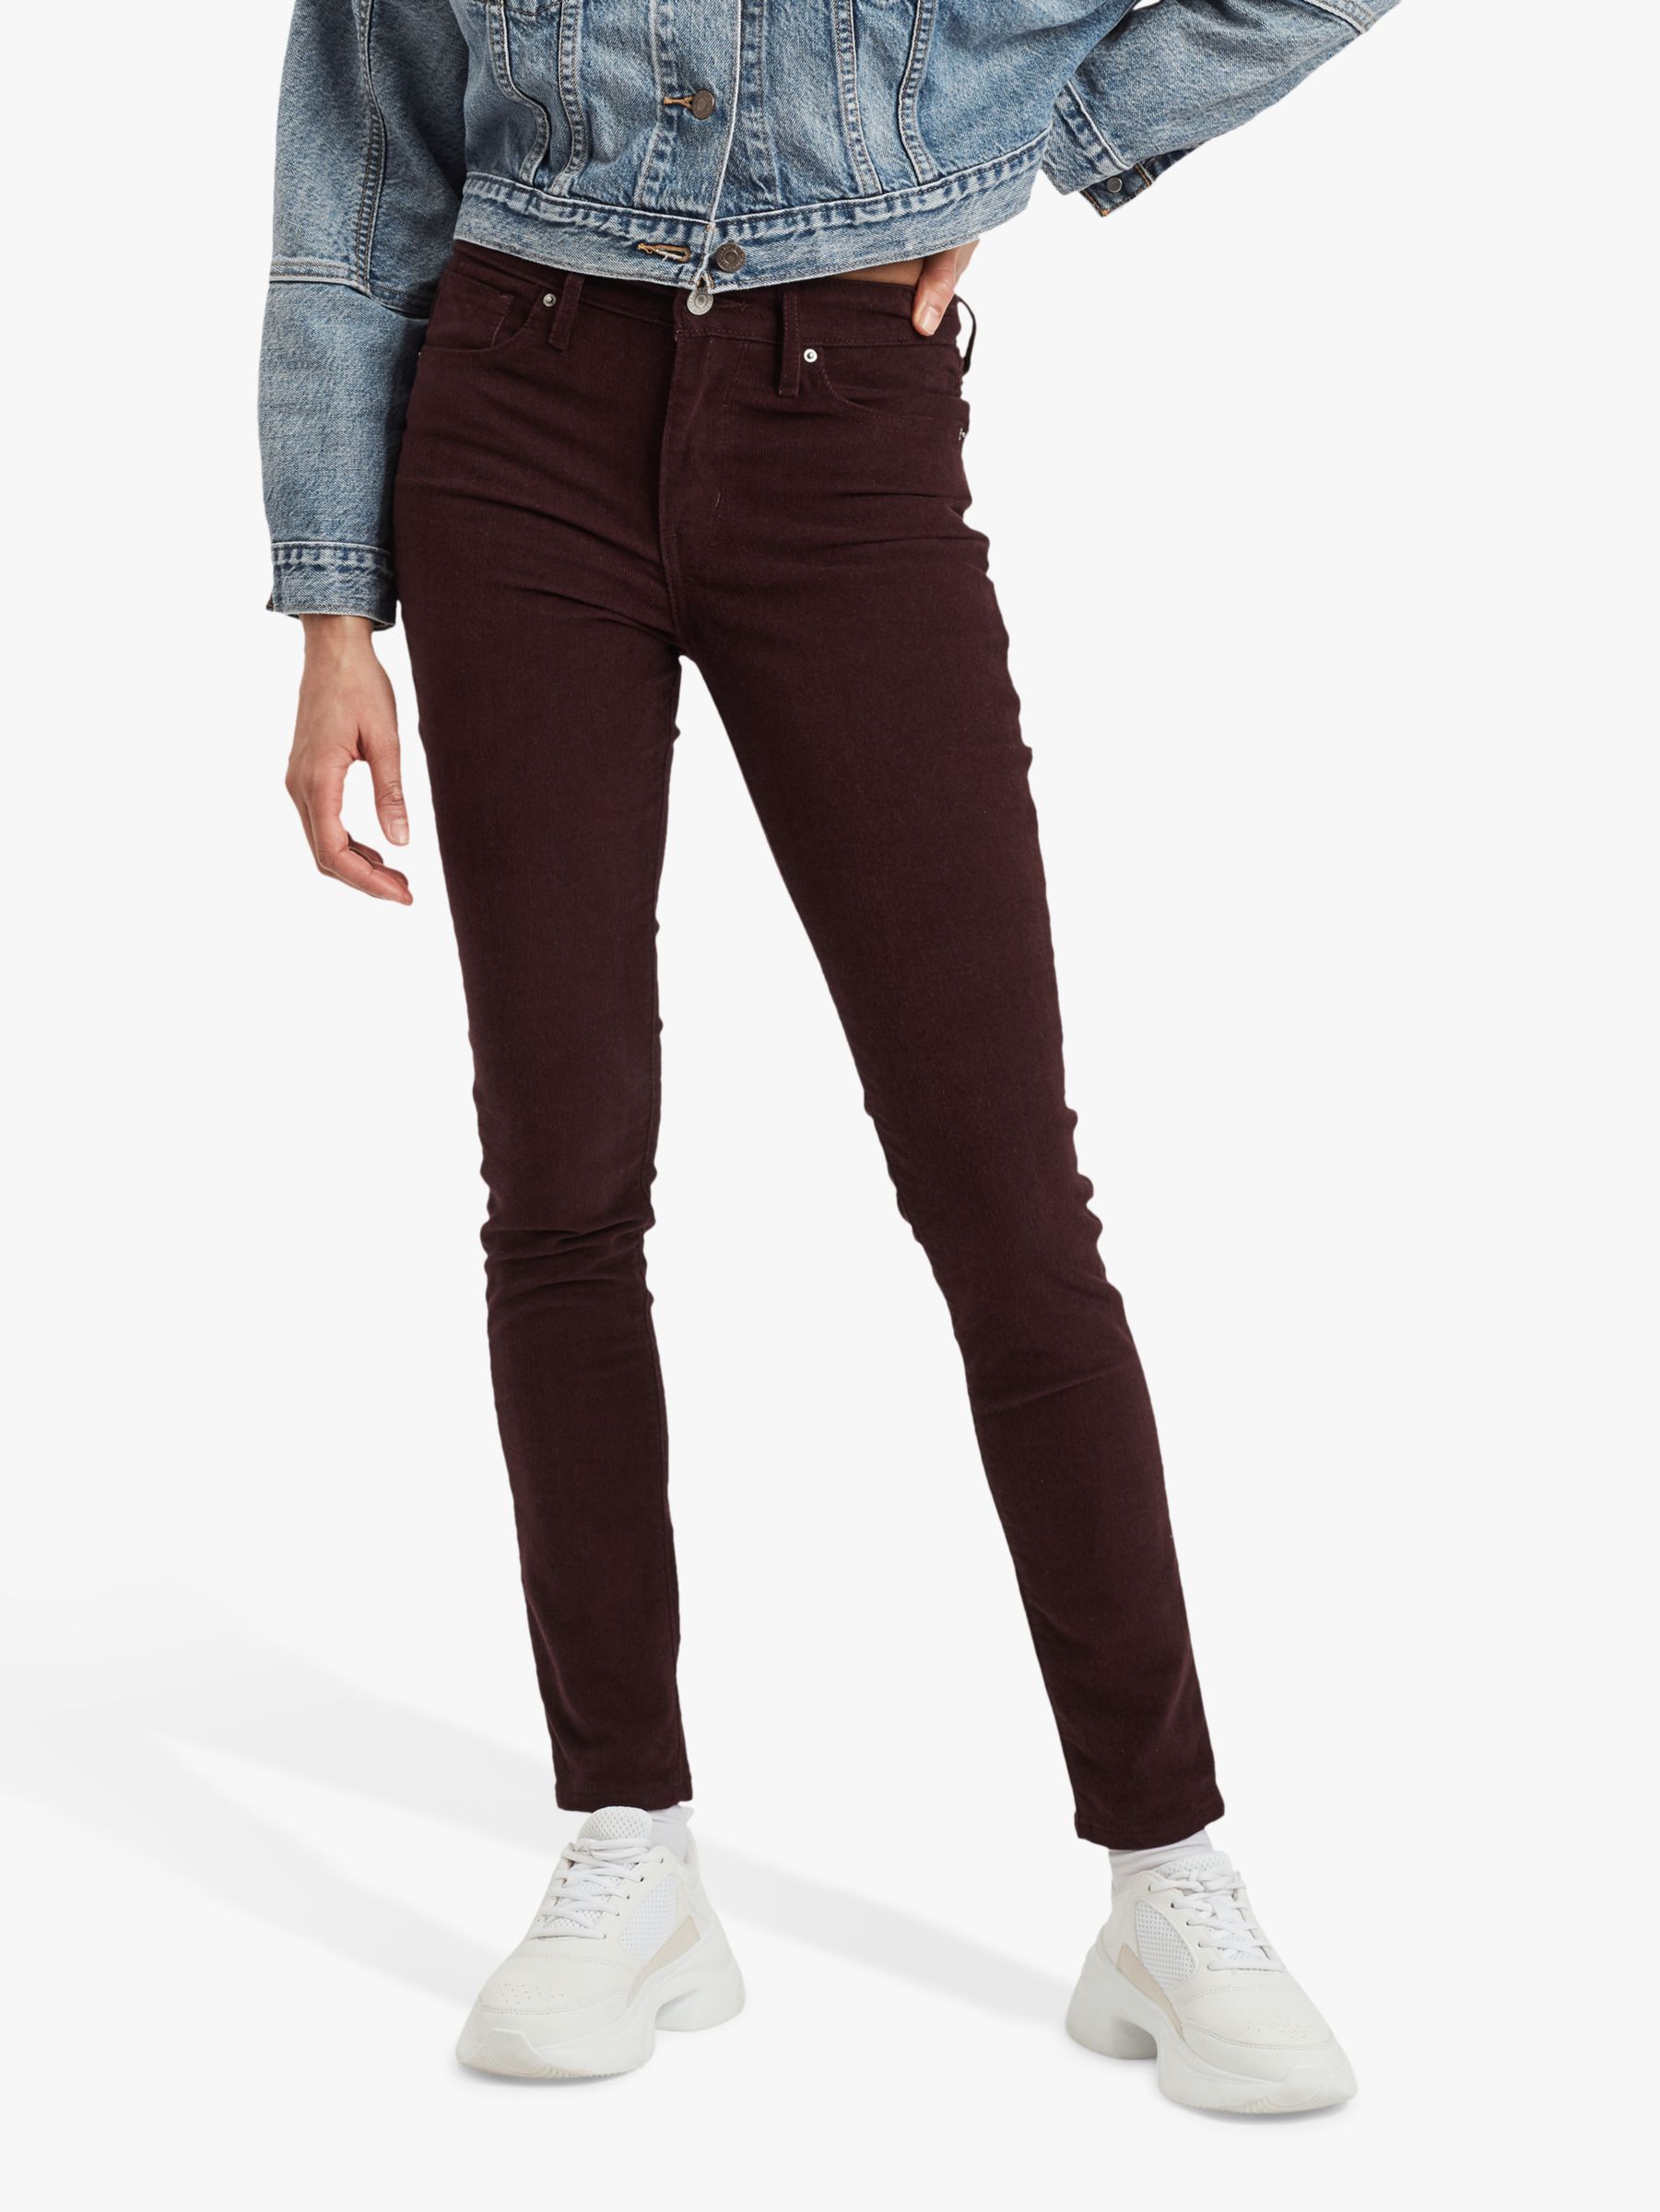 corduroy skinny jeans